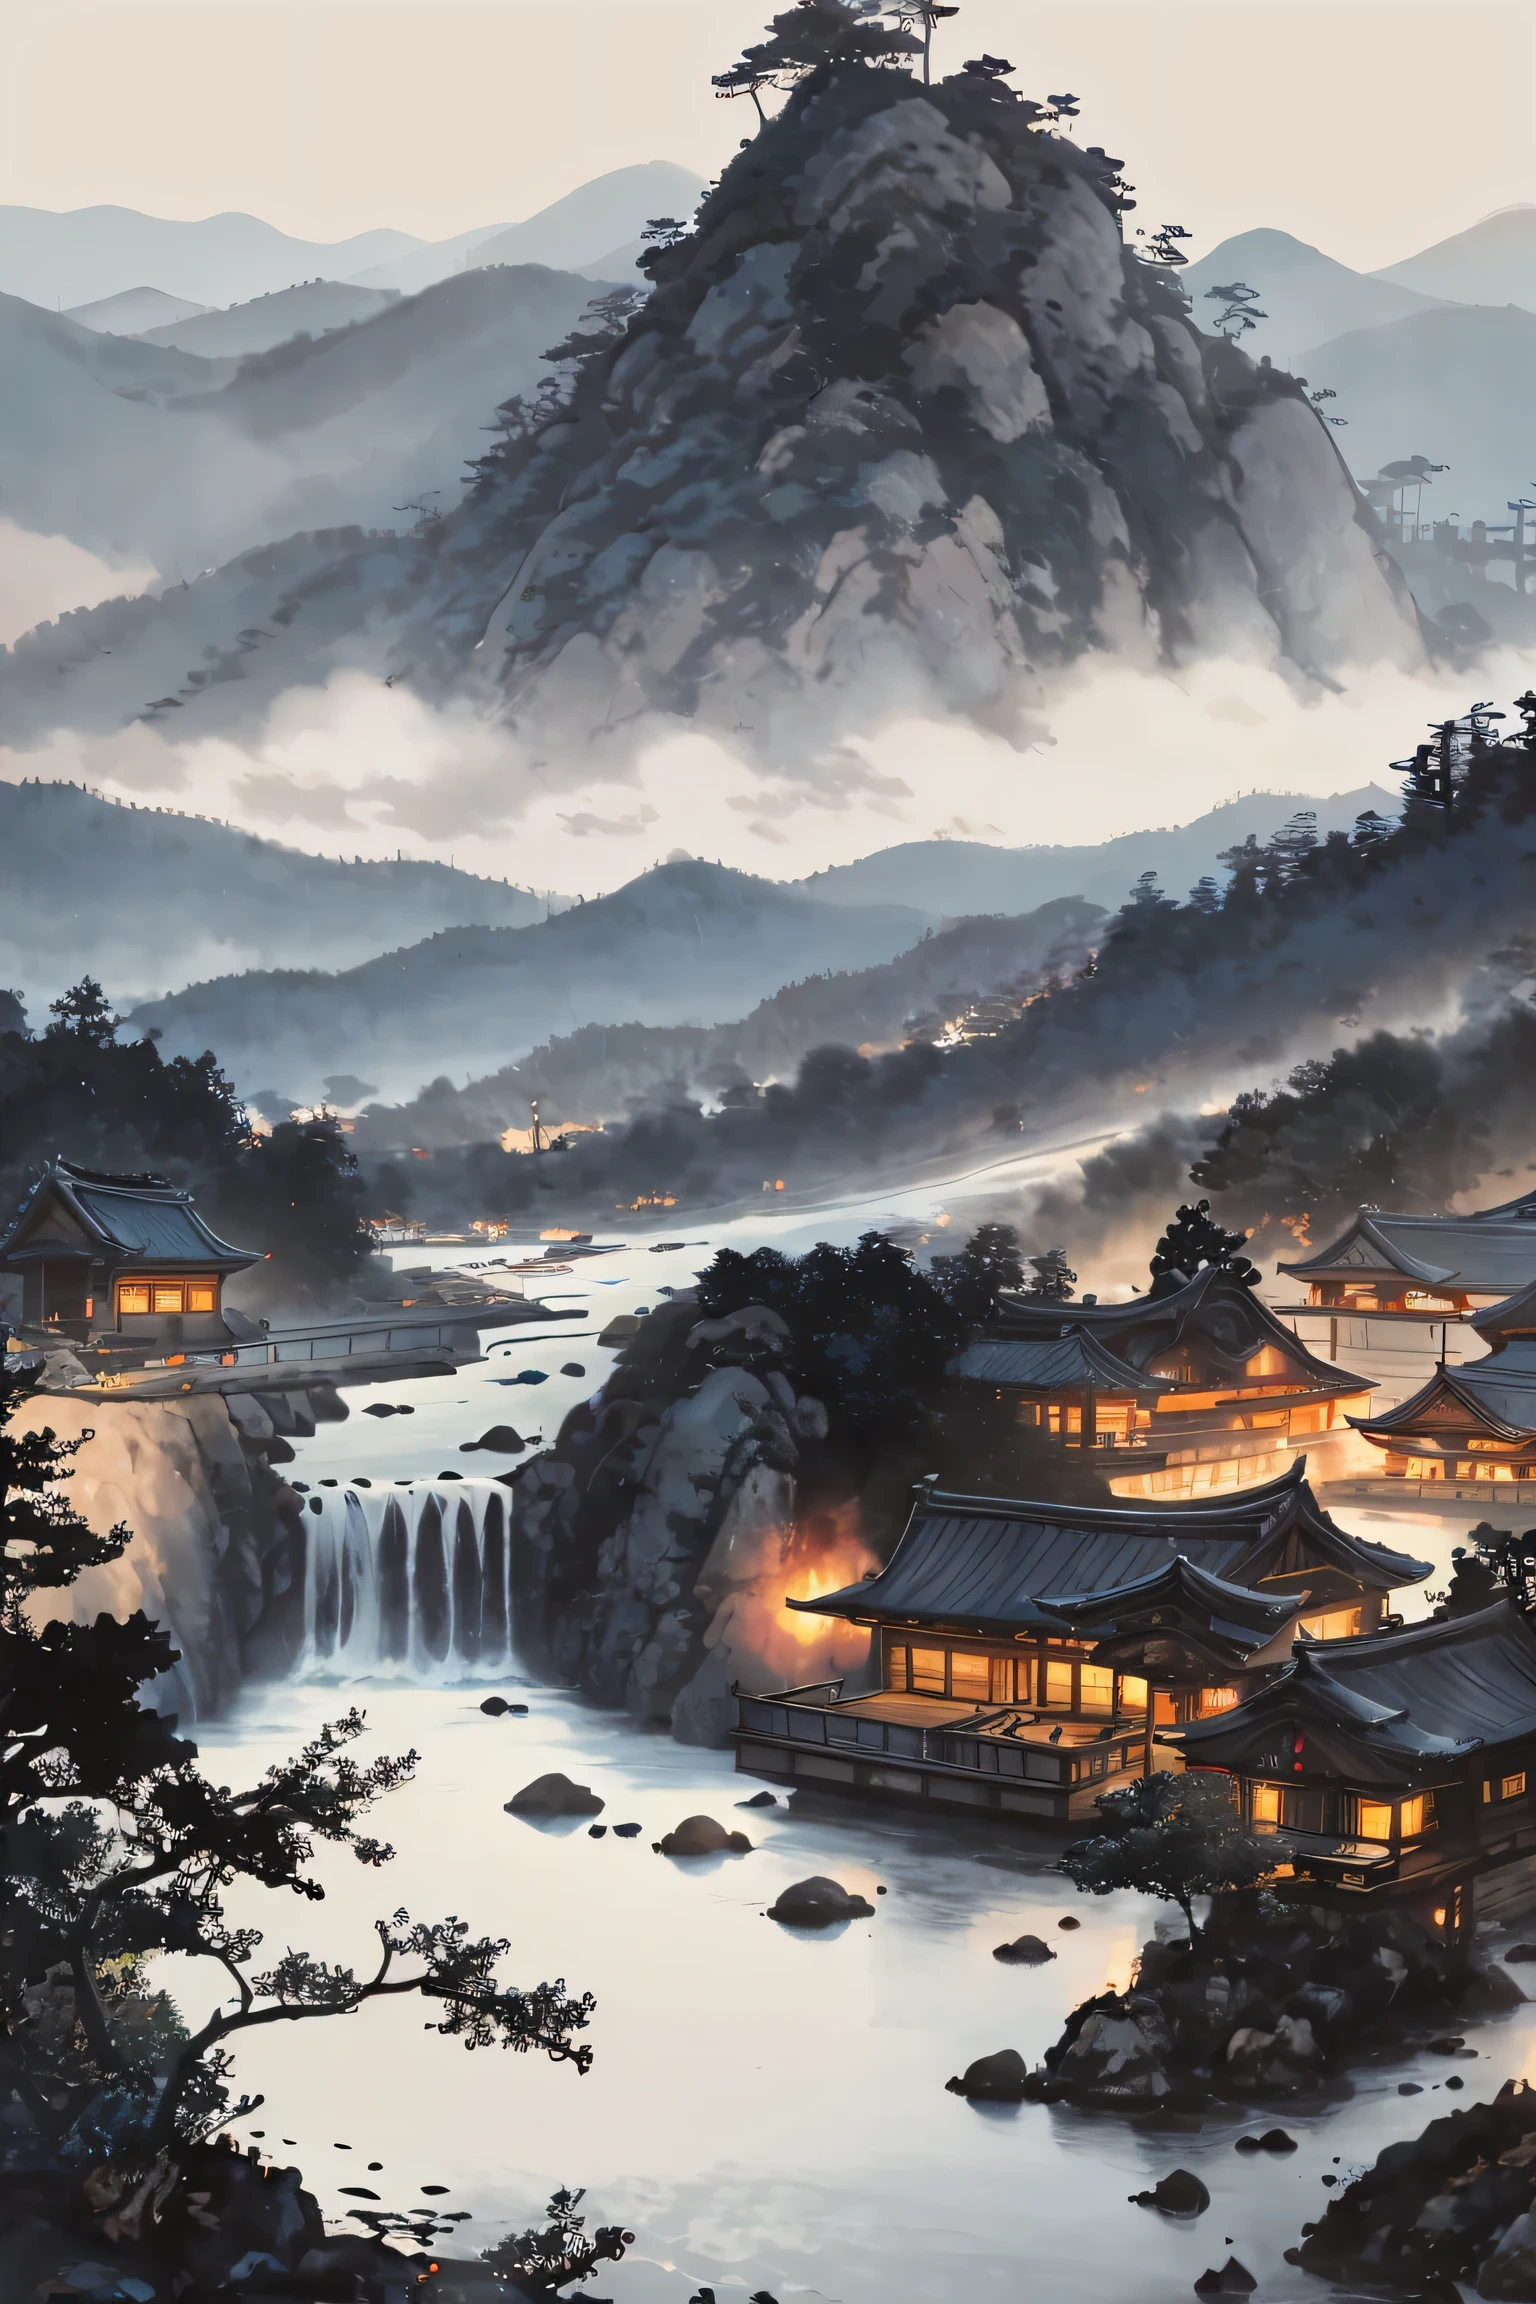 ミックスプラグインレイアウト, By Yoshitaka Amano, デジタルアートと絵画に非常に熟練した (Yoshitaka Amano) 丁寧に作られた. この作品はArtStationで人気があります，Unreal Engineと互換性があります. この風景には伝統的な中国の建築的特徴が見られる，都市の景観は深い森のようだ, 雄大な山々を背景にした，流れる水と微妙な要素.